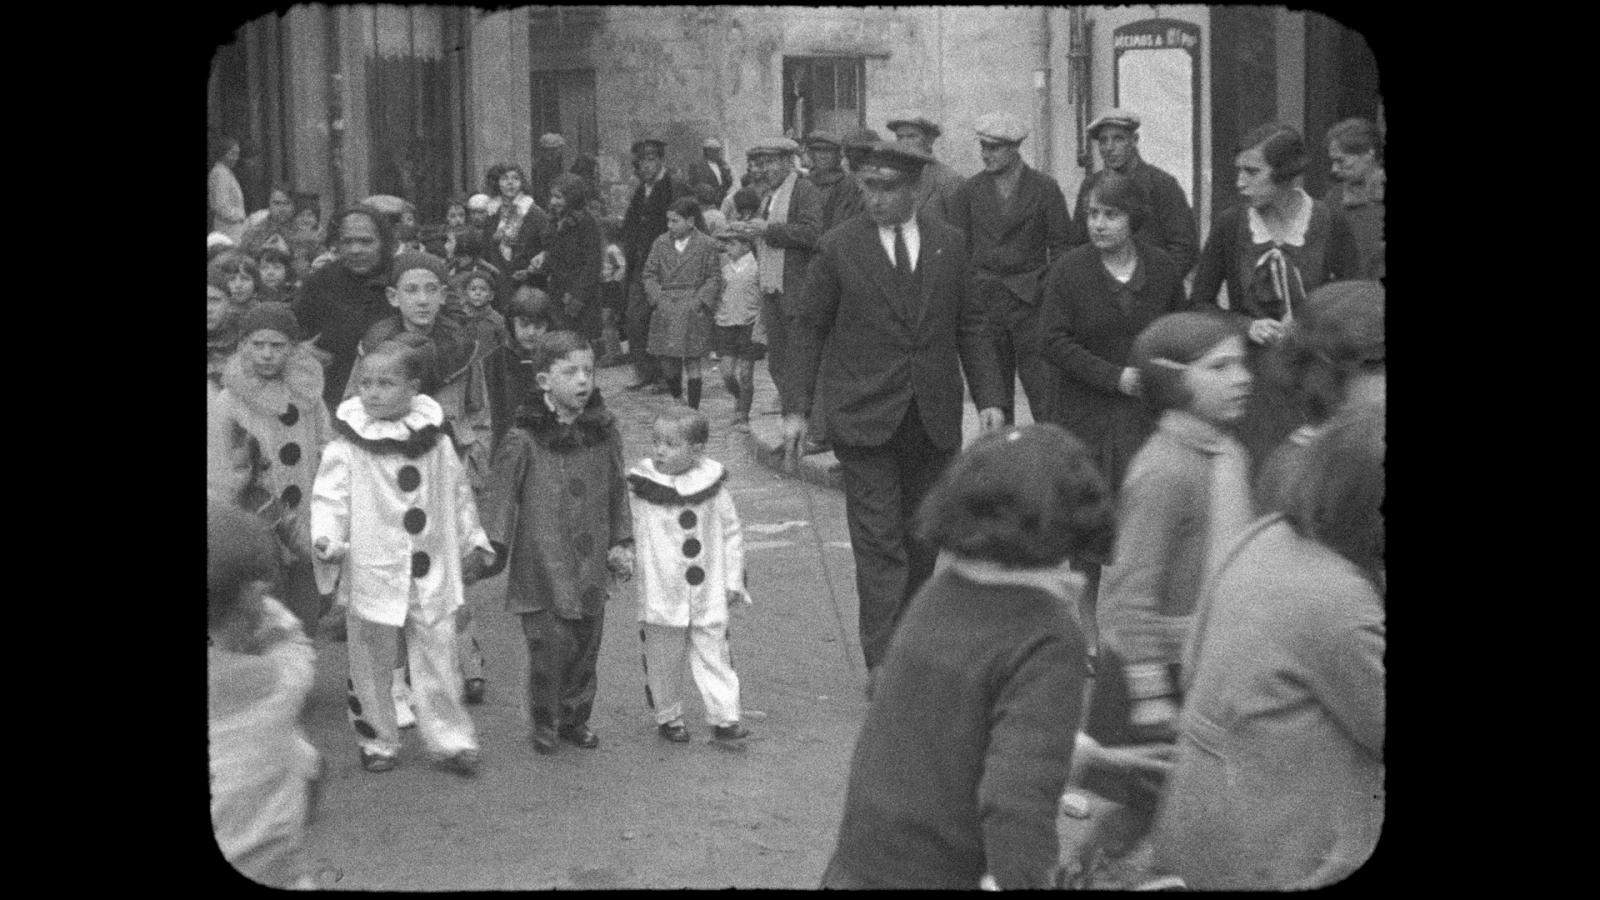 Fotograma del treball que mostra imatges de la celebració del carnaval de 1929 a Granollers